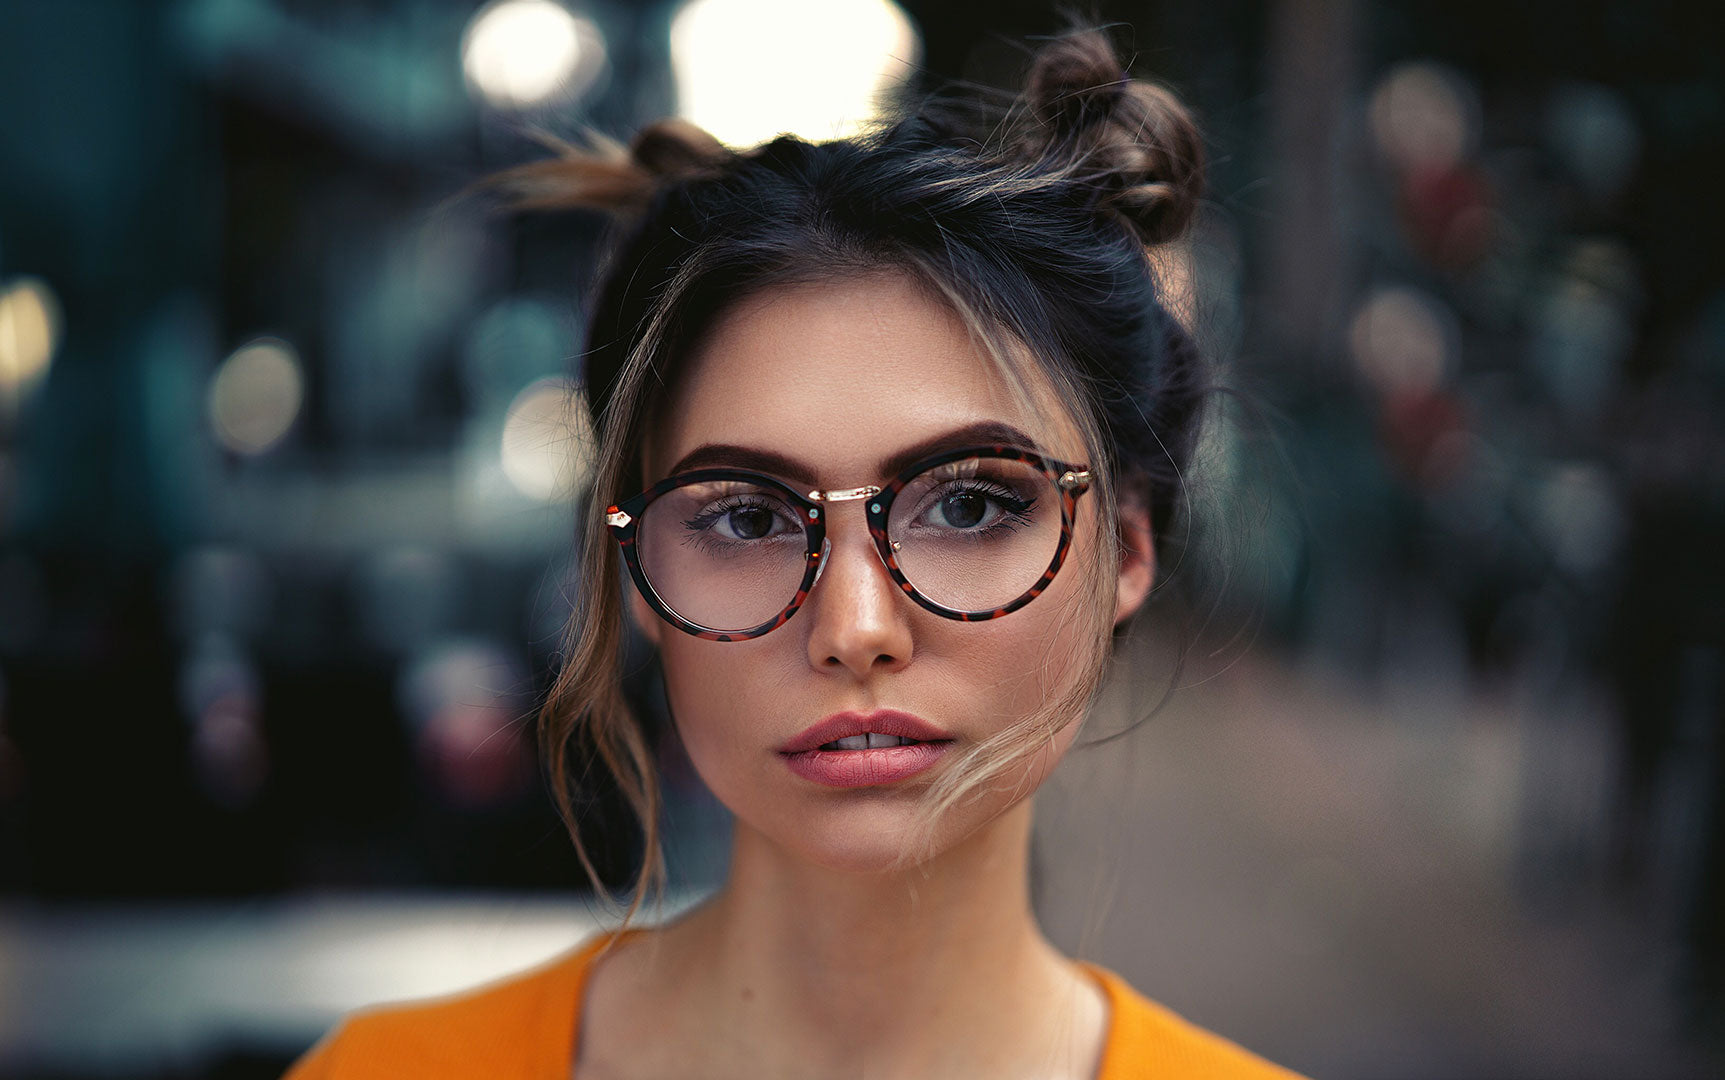 Perché la distanza interpupillare è fondamentale per ottenere occhiali graduati perfetti: guida alla misurazione e all'acquisto online